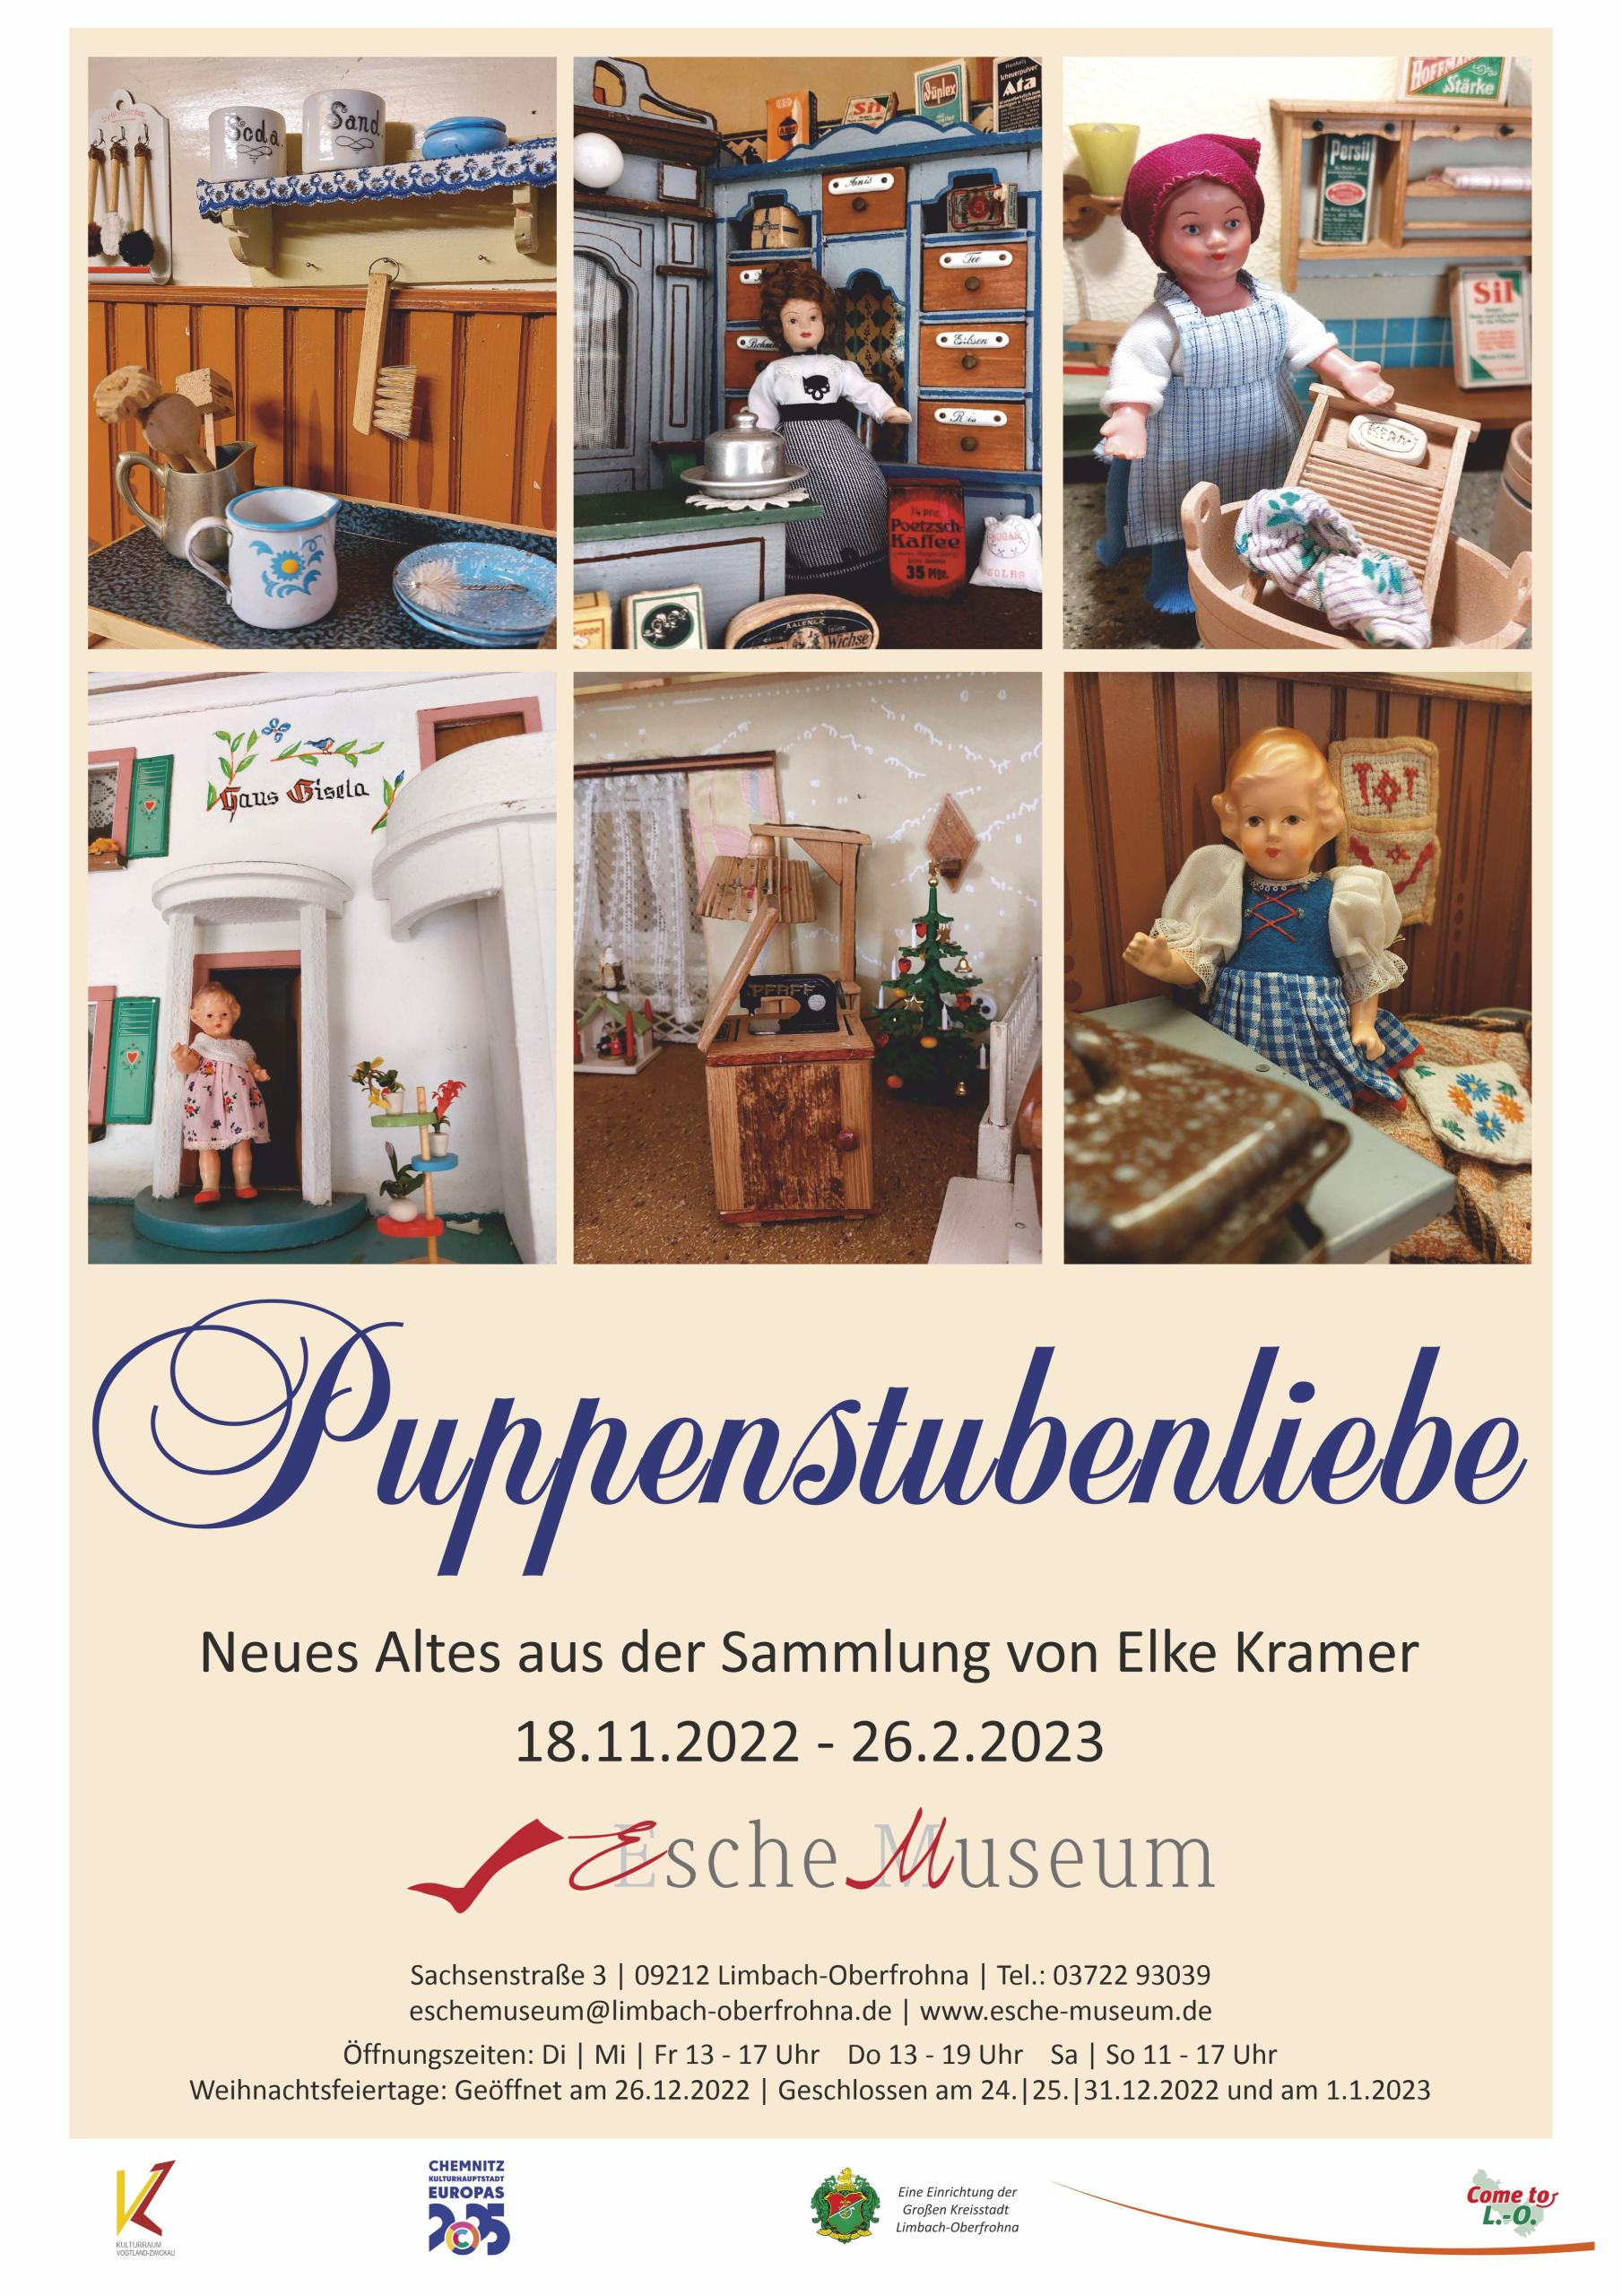 Plakat für Ausstellung Puppenstubenliebe 18.11.2022 bis 26.2.2023